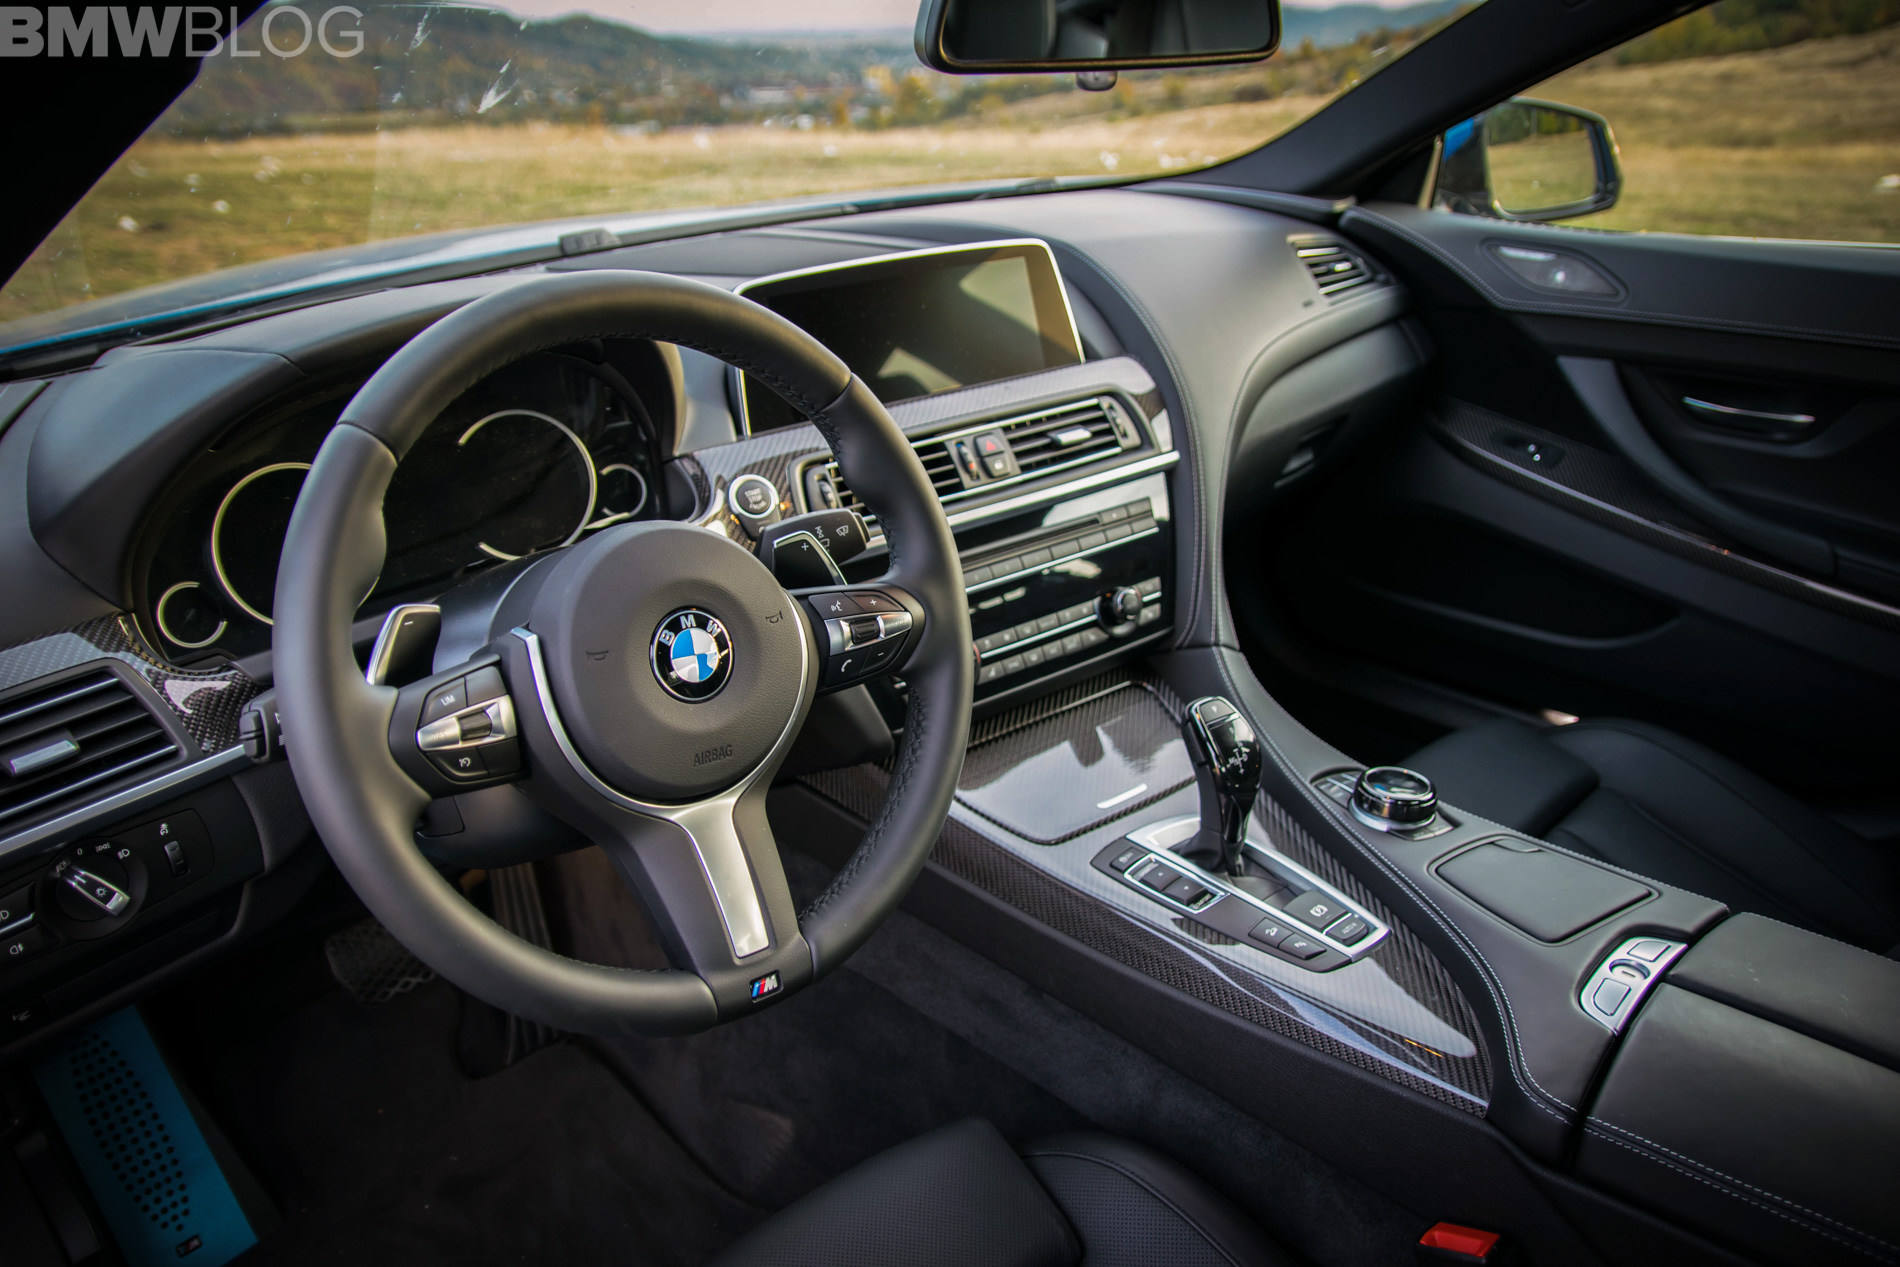 TEST DRIVE: 2018 BMW 640d xDrive Gran Coupe